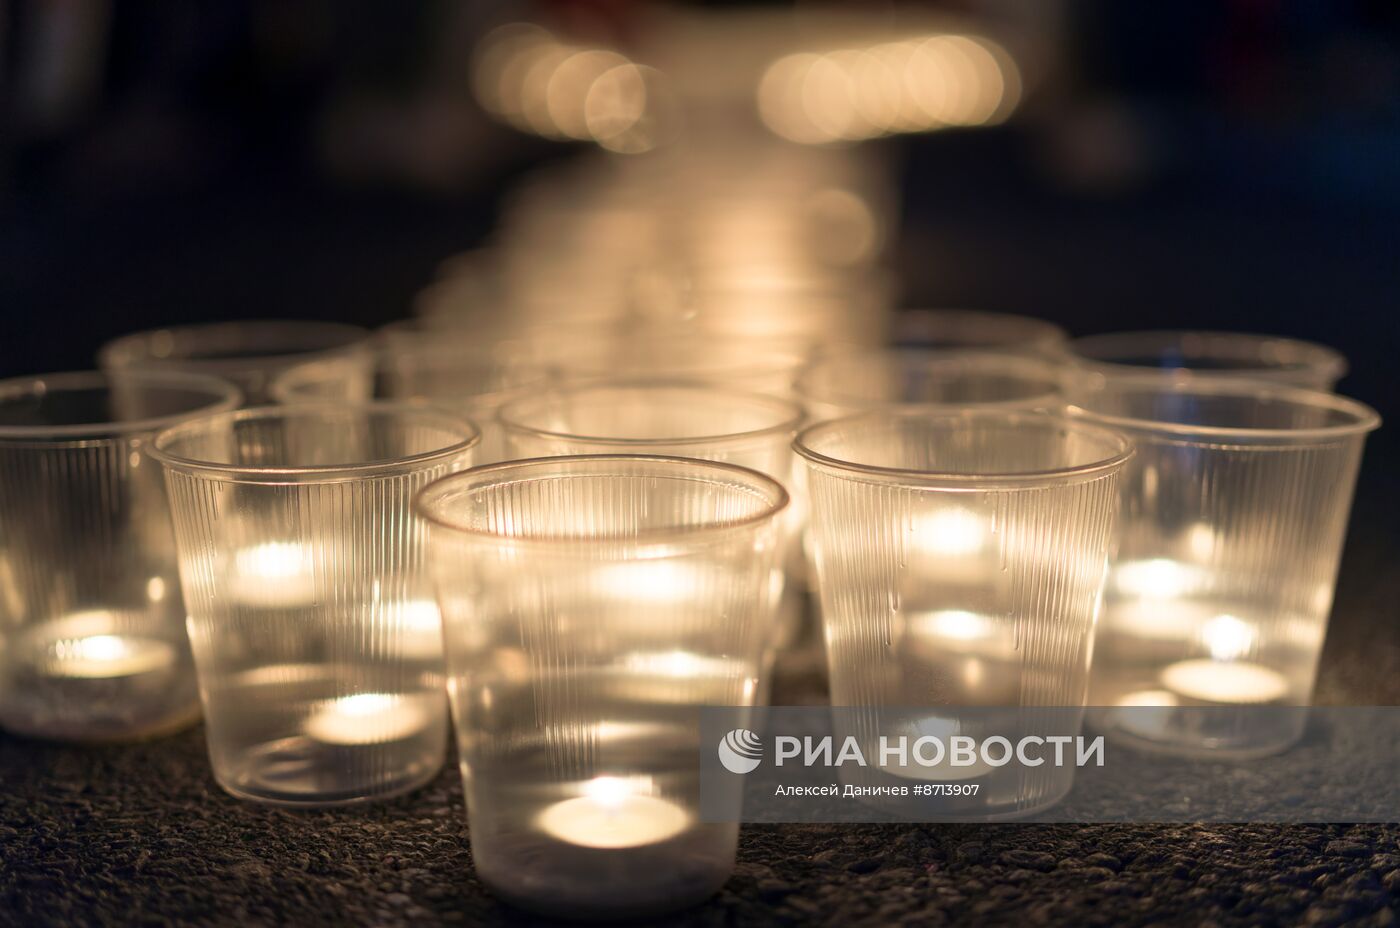 Акция "Свеча памяти" в Санкт-Петербурге